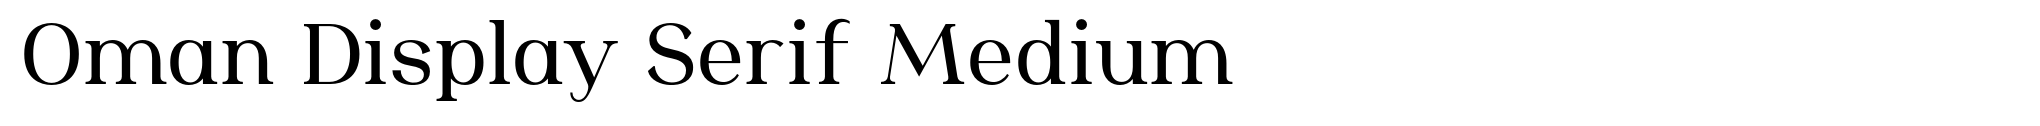 Oman Display Serif Medium image